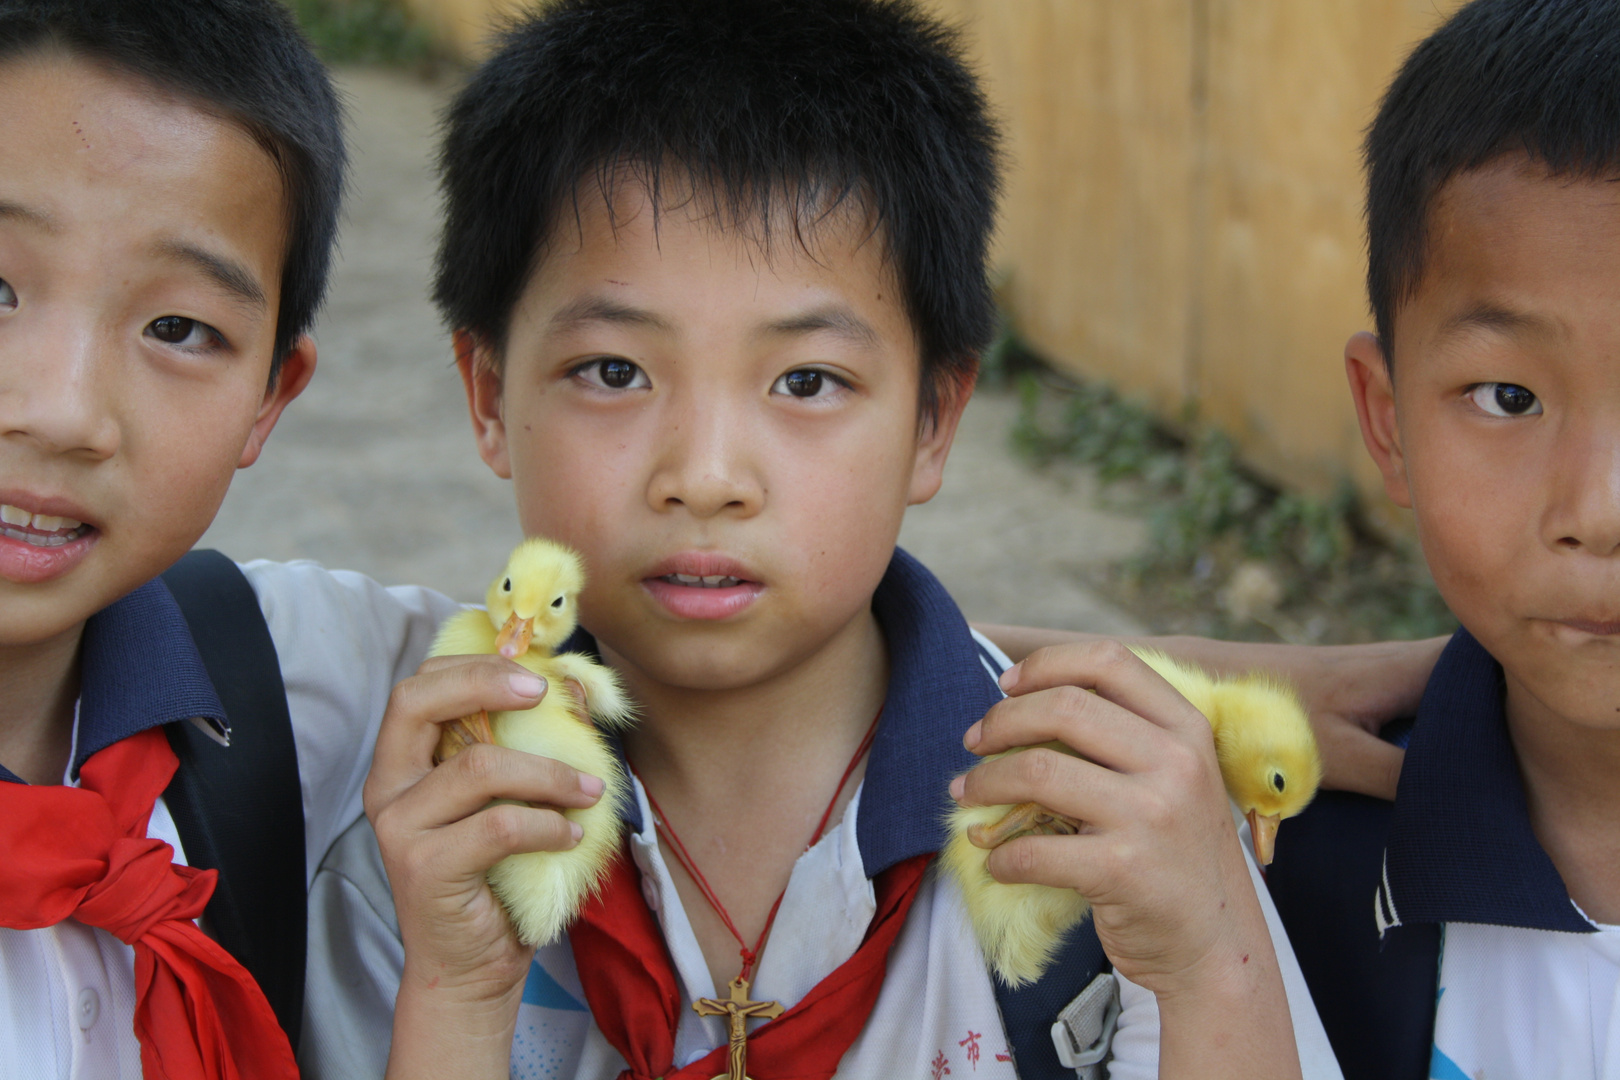 Chinese boys + ducks